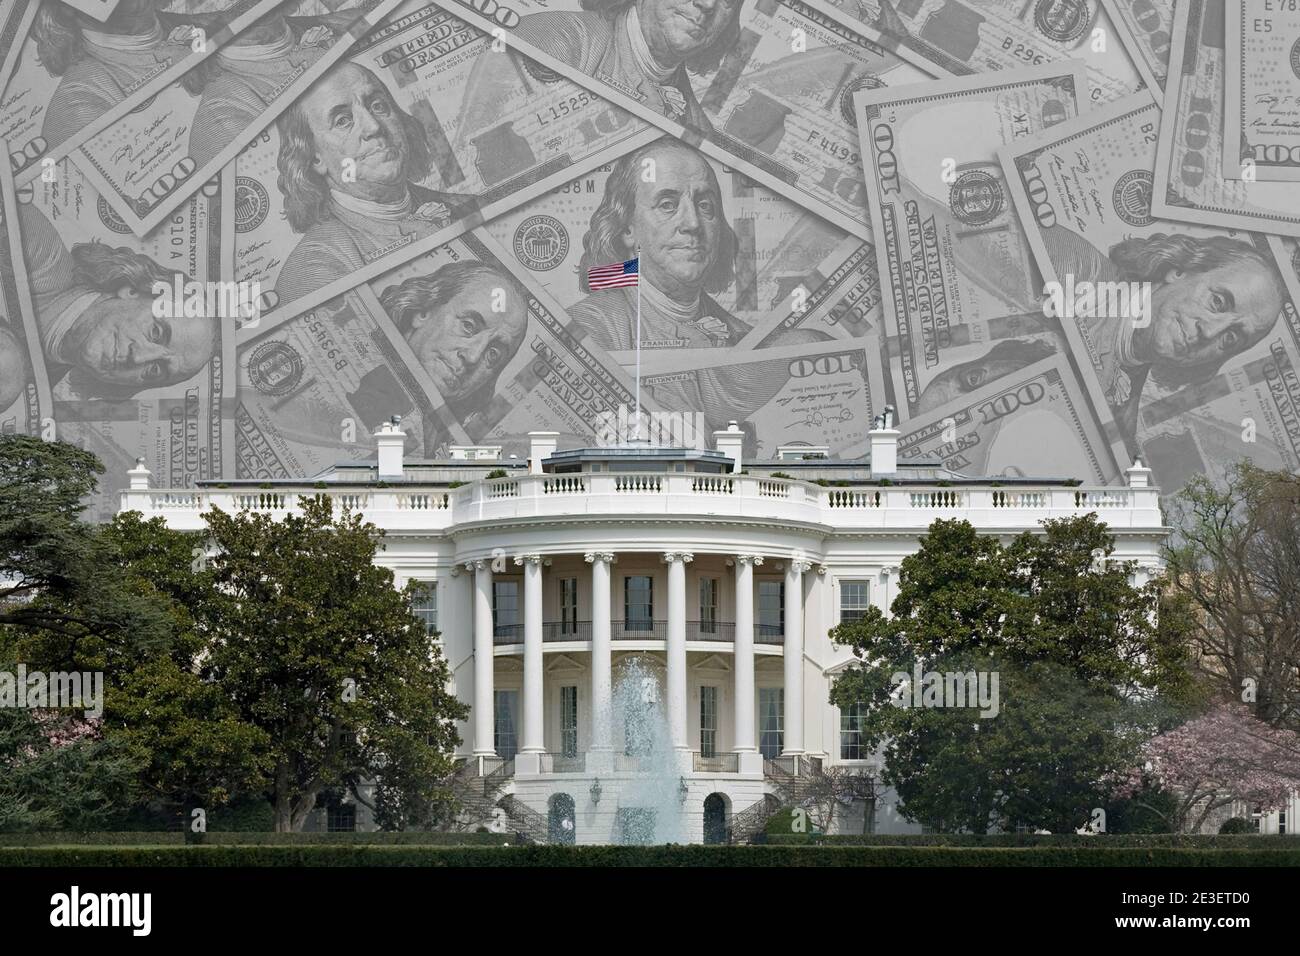 La Casa Bianca degli Stati Uniti d'America a Washington D.C. è mostrata sovrapposta ad una collezione di fatture da 100 dollari, con spazio per il testo sopra. Foto Stock